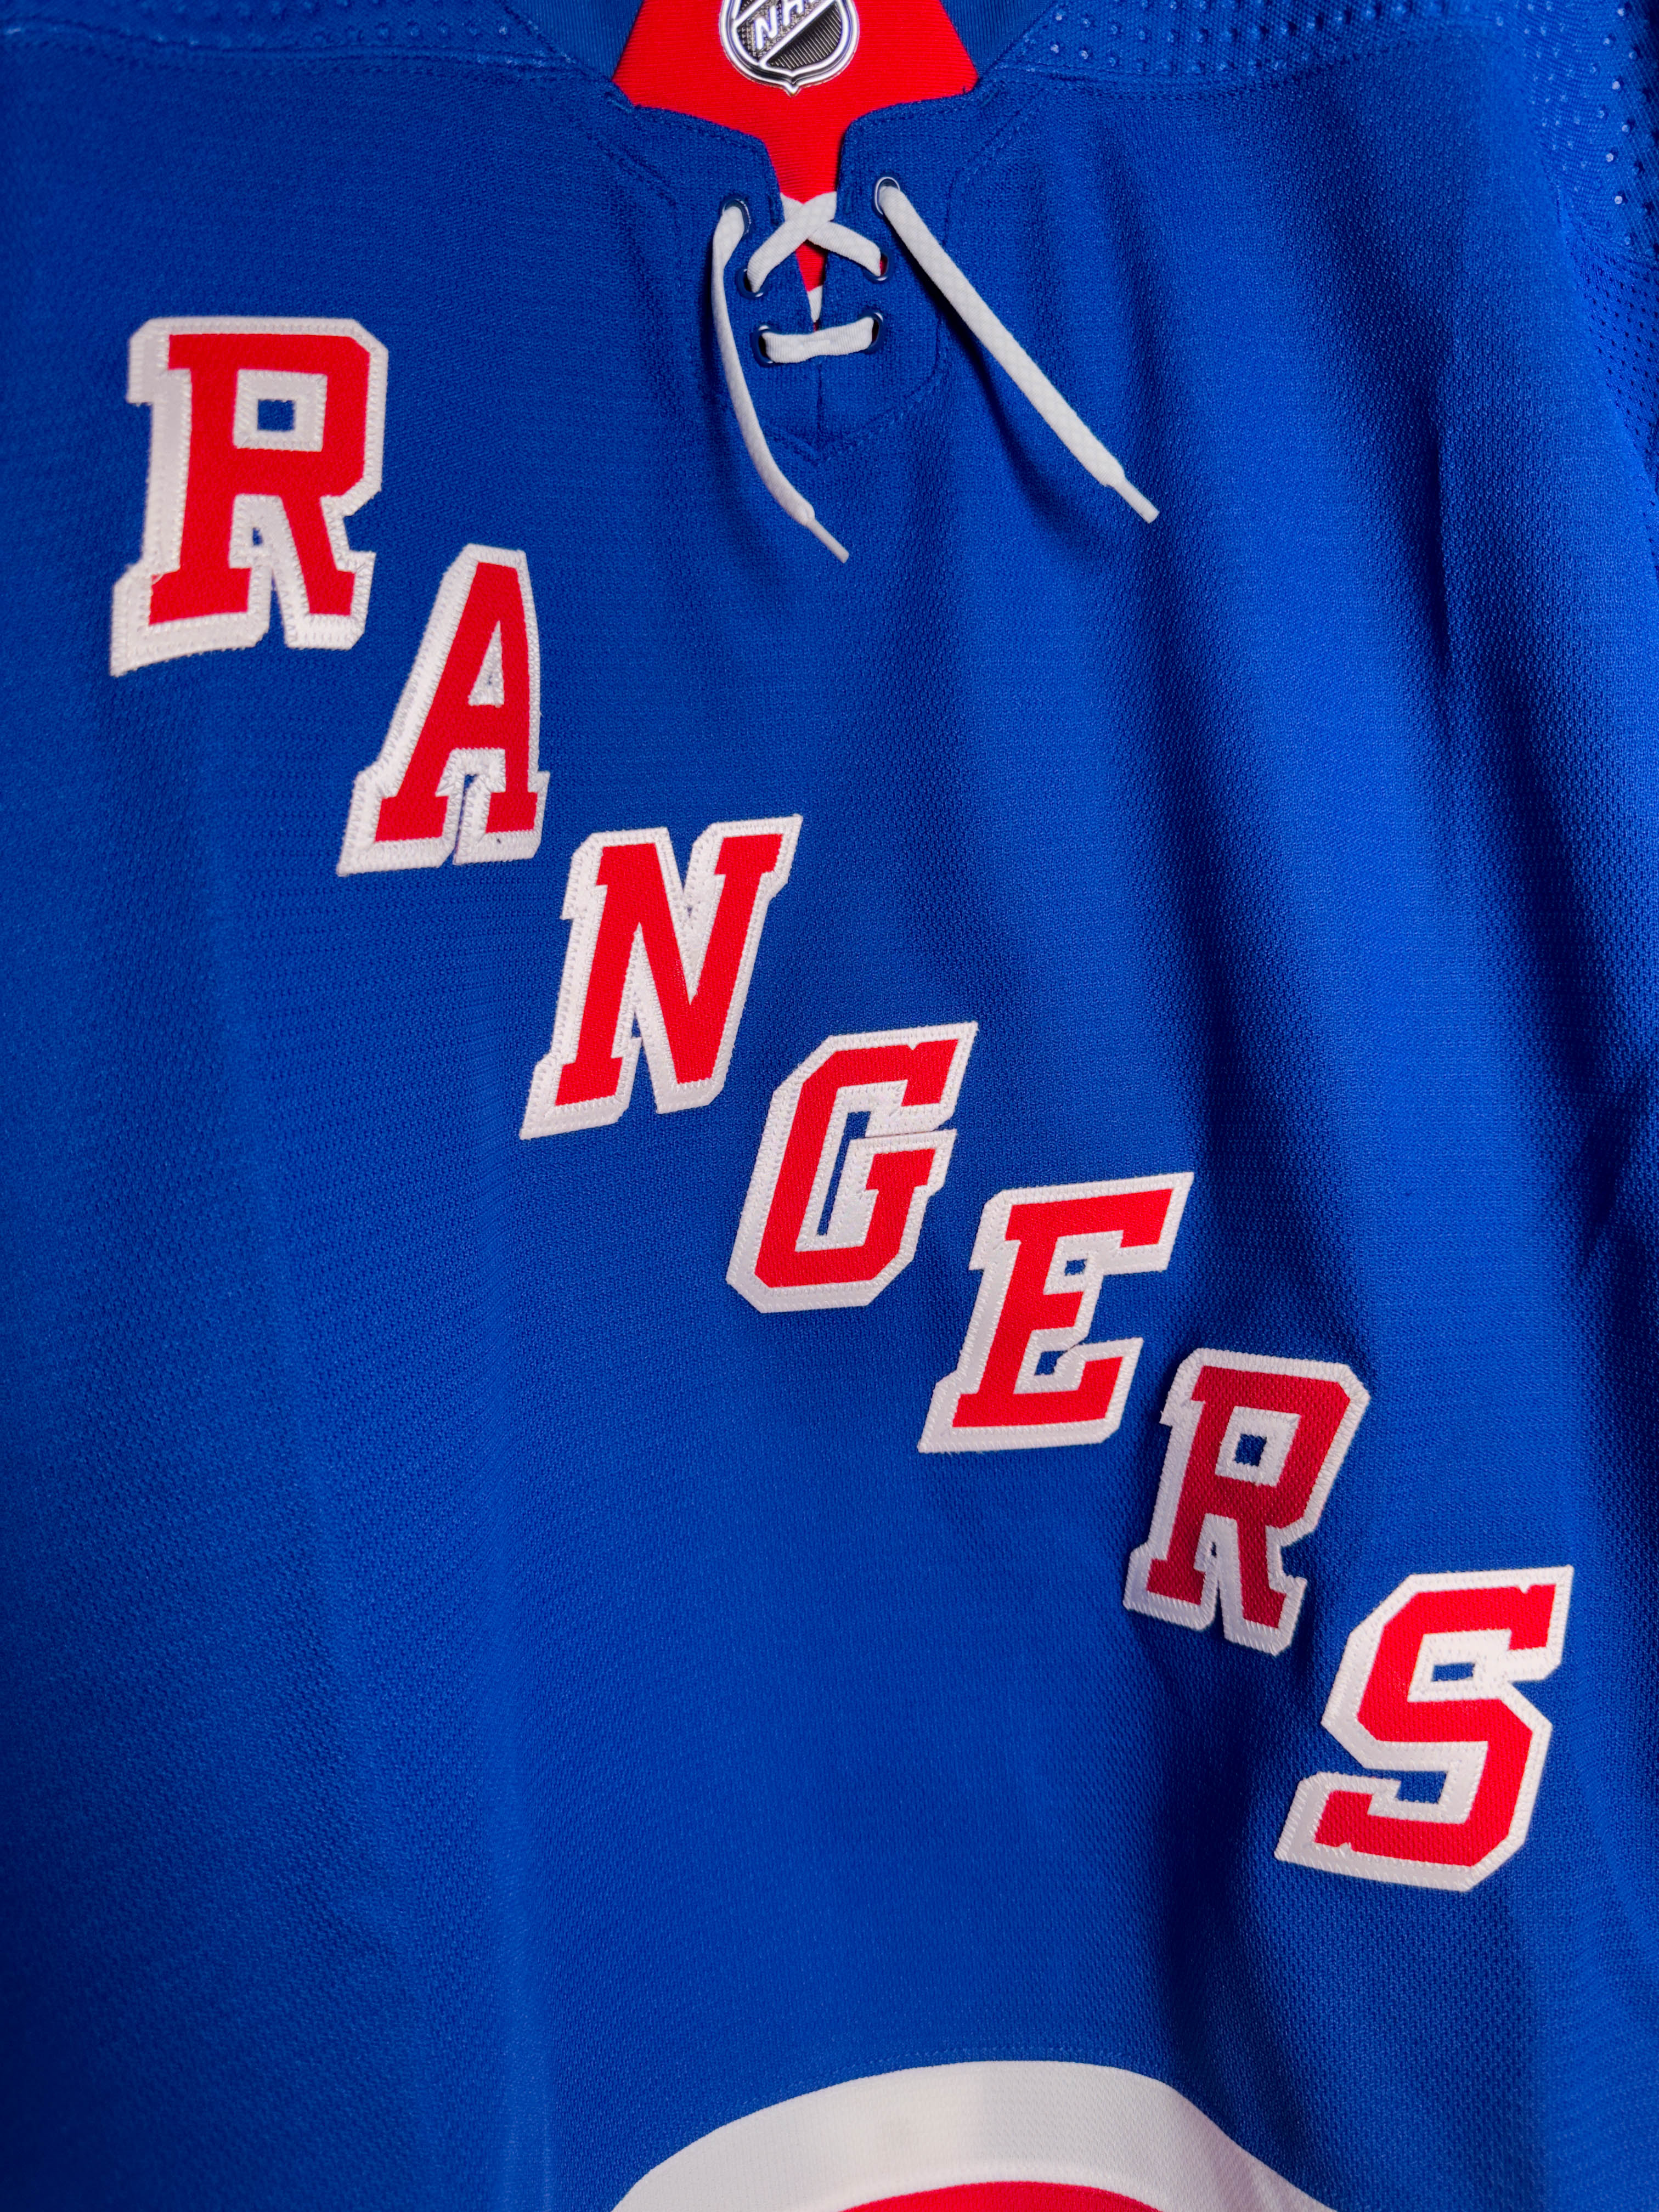 New York Rangers Playoffs Gear, Rangers Jerseys, New York Rangers Clothing, Rangers  Pro Shop, Rangers Hockey Apparel